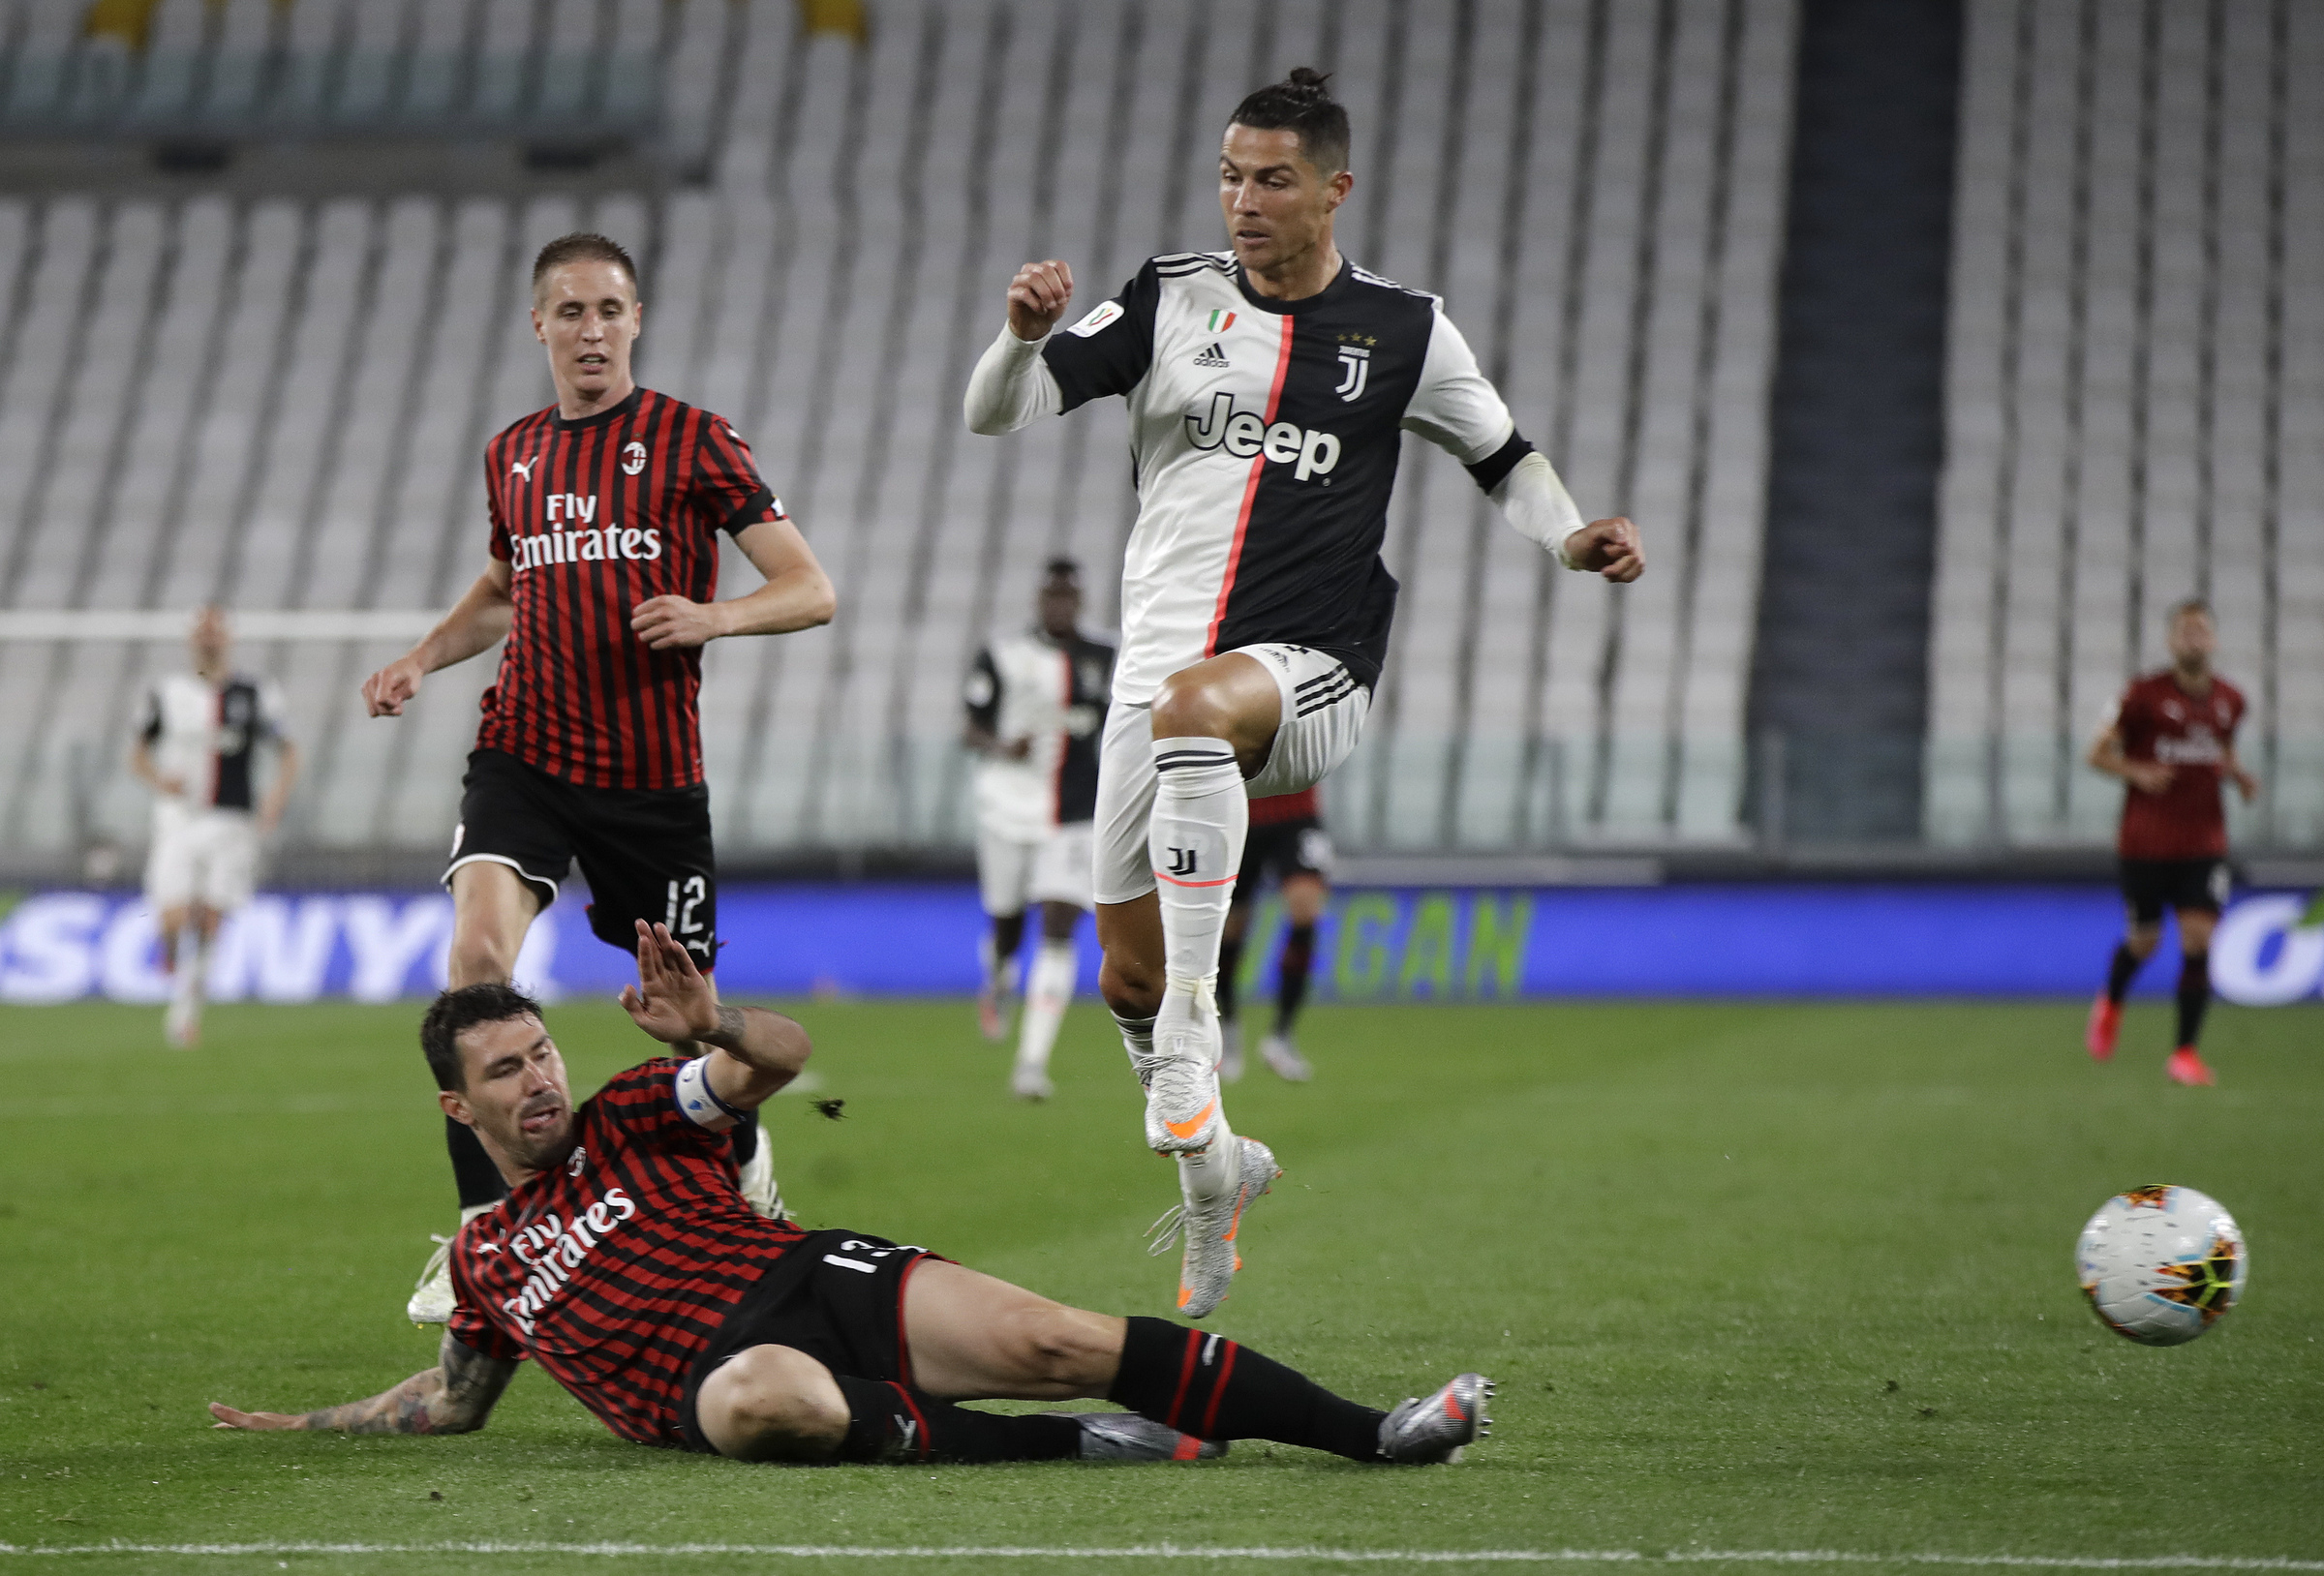 Juventus-Milan - Semifinale di ritorno Coppa Italia 2019/2020 share TV